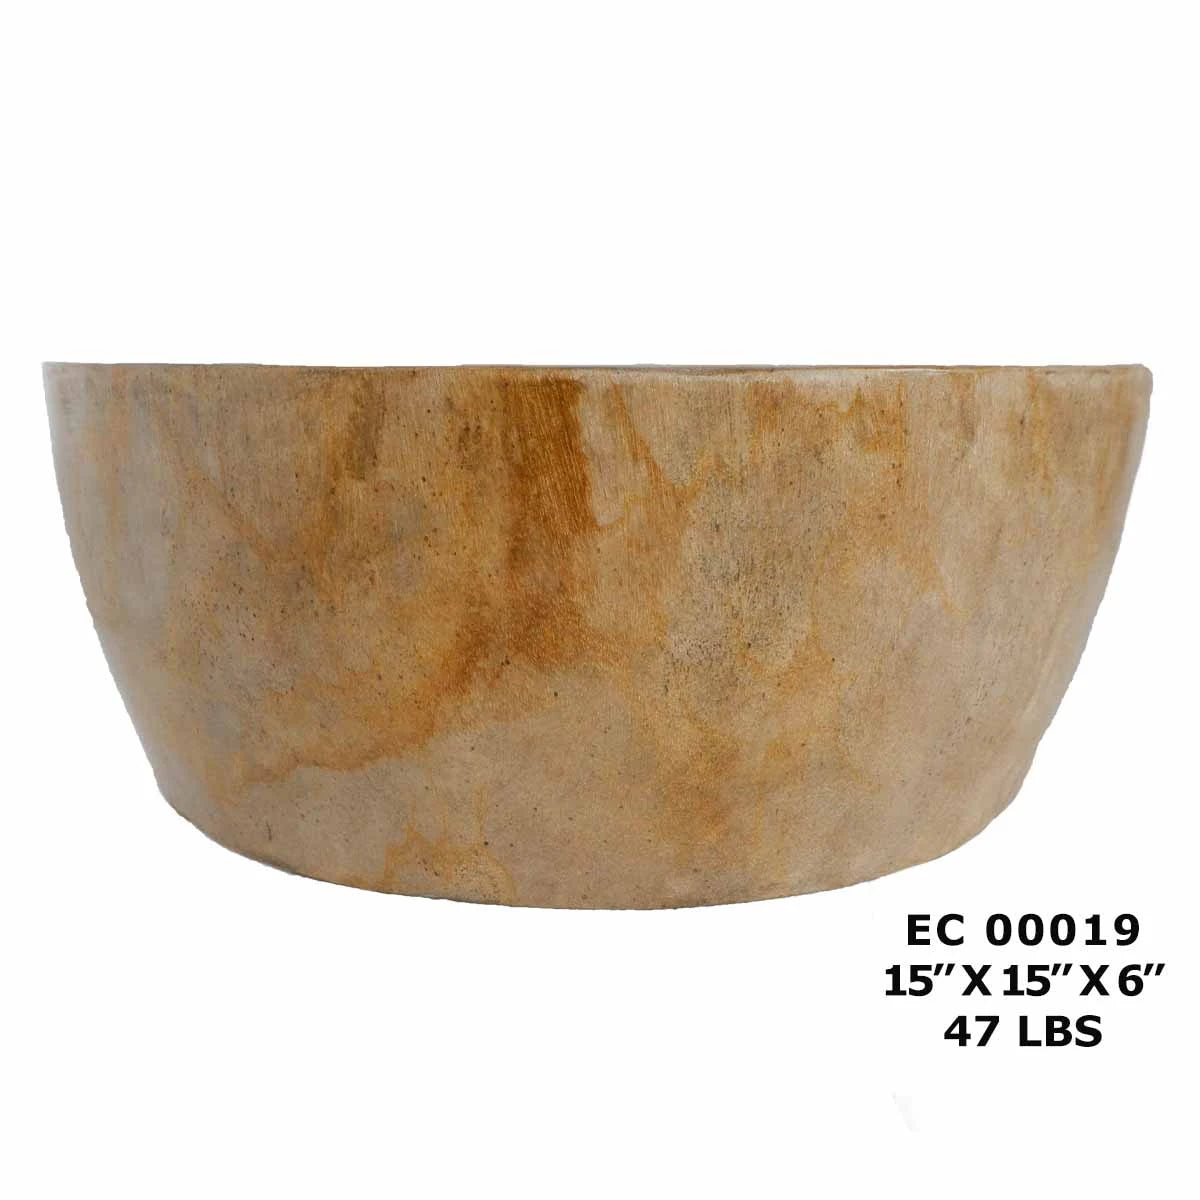 Petrified Wood Sink Bowl, Stone Bathroom Basin Sink EC00019